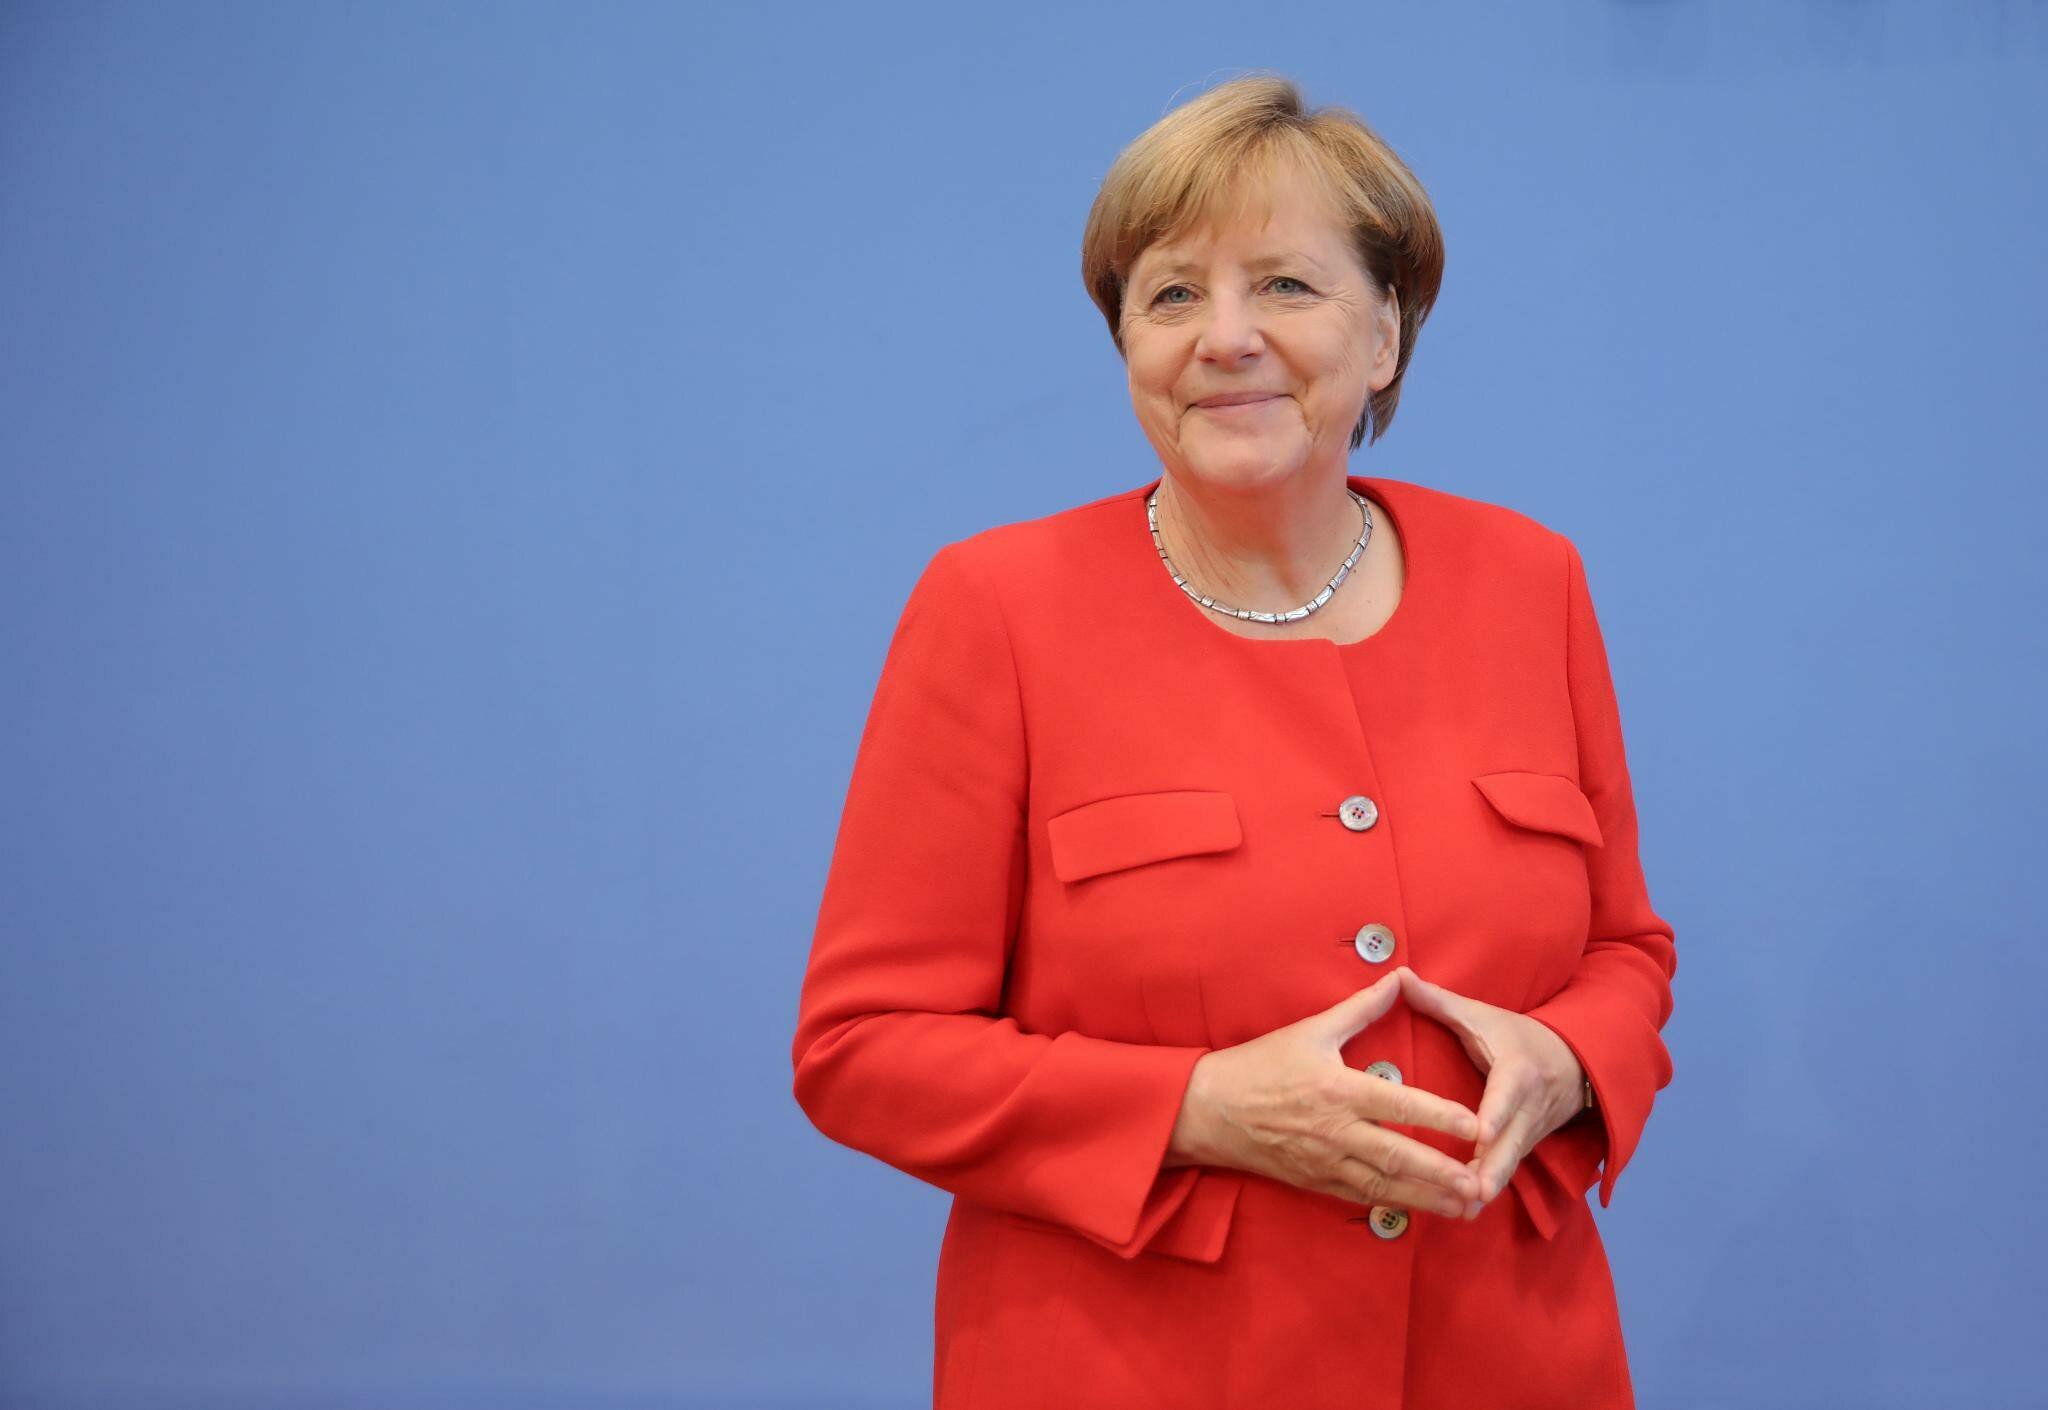 Восковая фигура Ангелы Меркель - отражение ее опыта и авторитета, прекрасно переданная в каждой детали